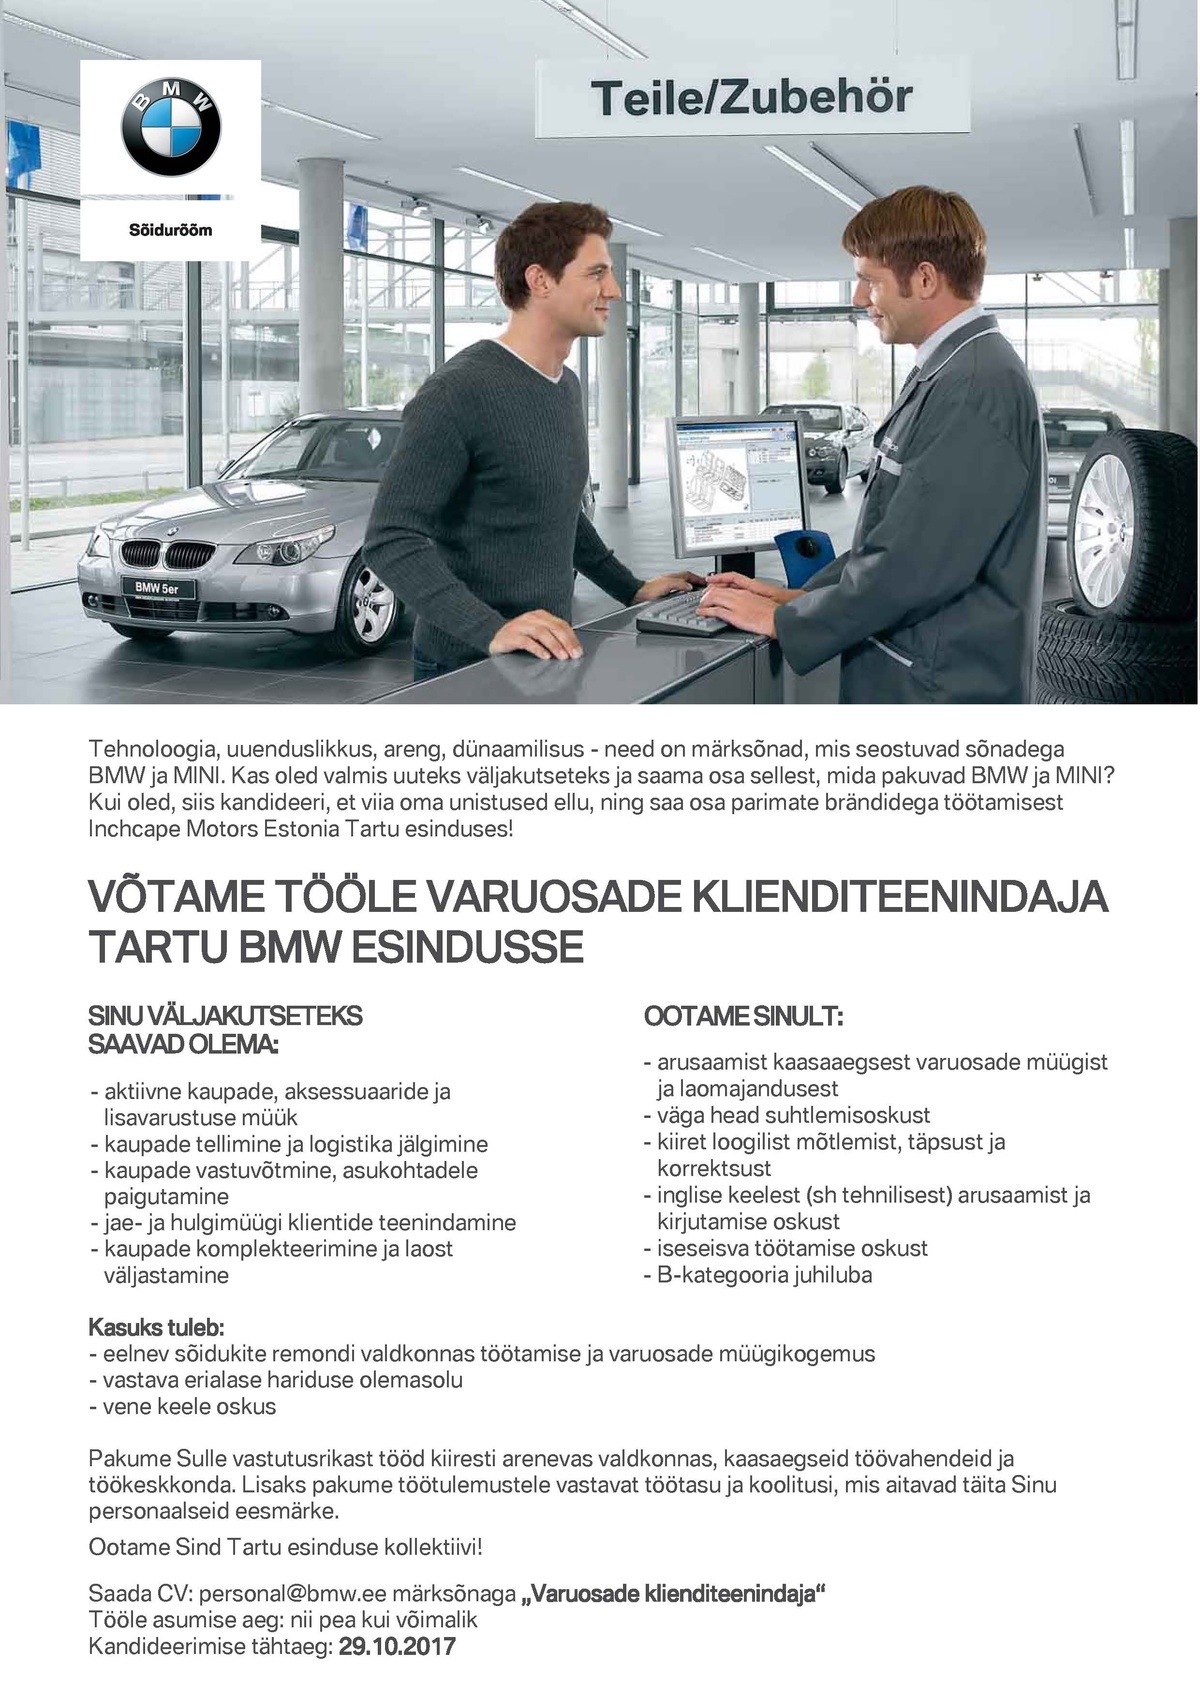 Inchcape Motors Estonia OÜ Varuosade klienditeenindaja Tartu BMW esinduses